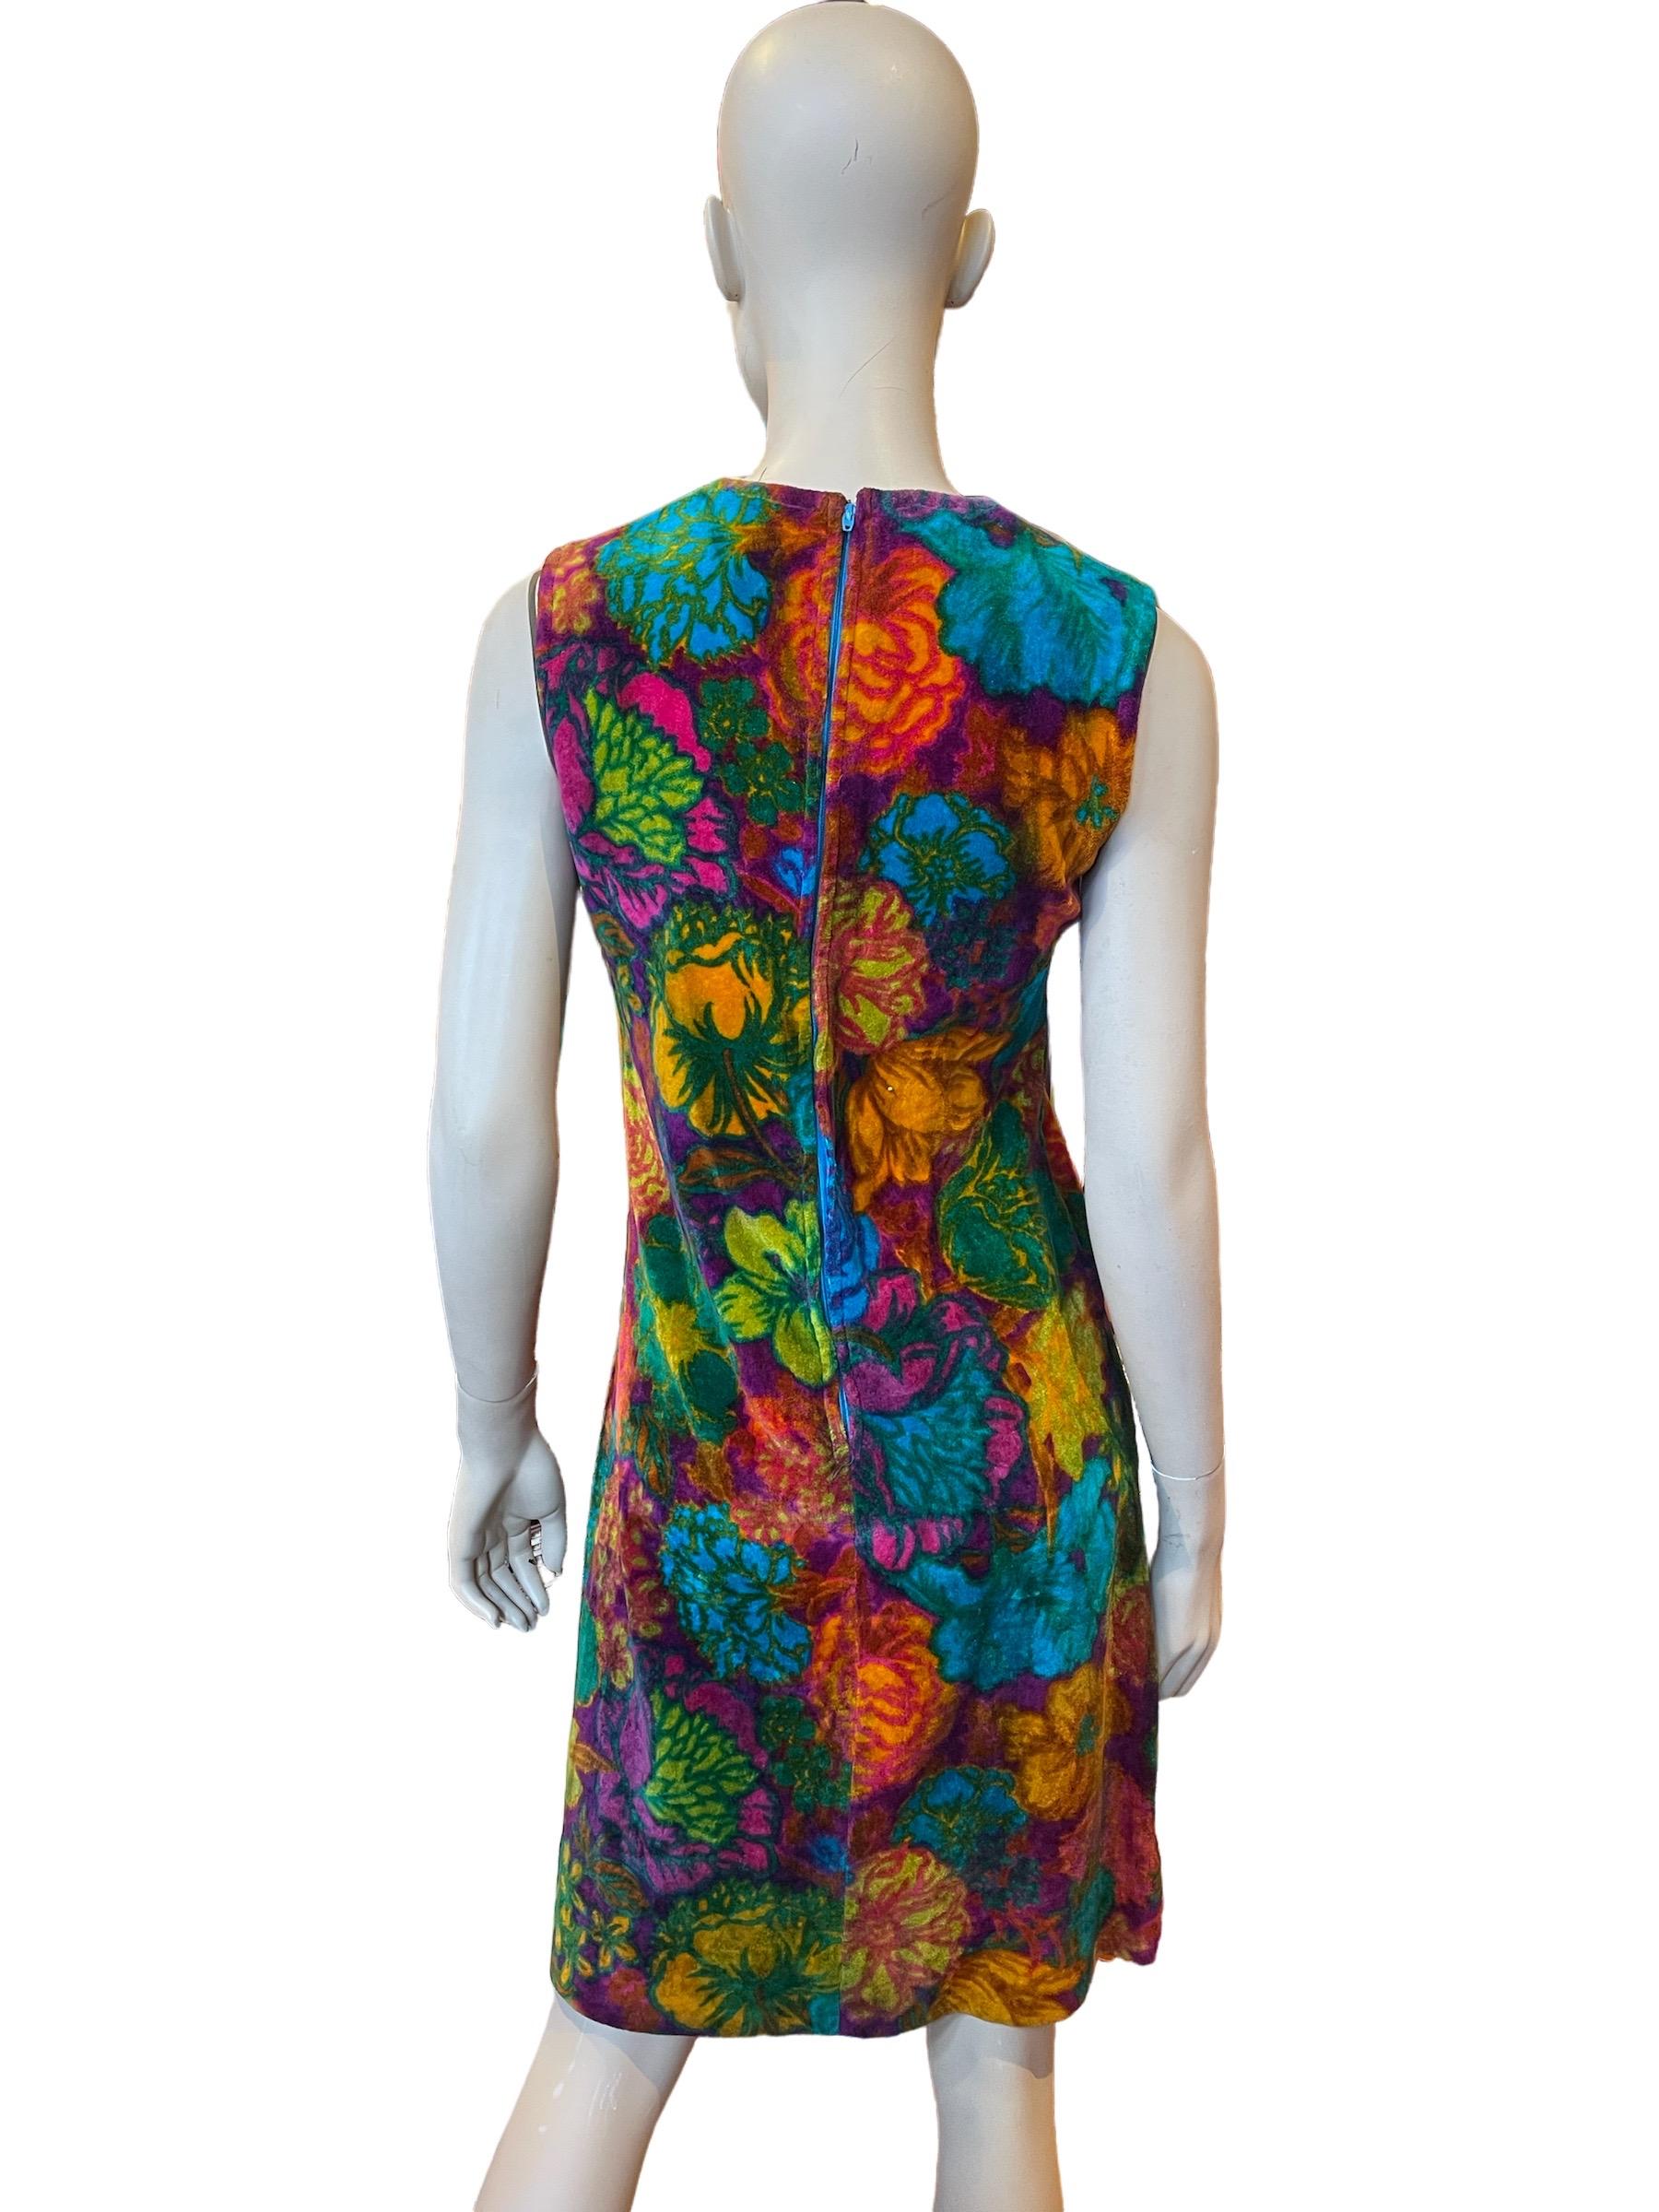 1960er Flower Power Ärmelloses Kleid in A-Linie

Ein wunderschönes ärmelloses, a-linienförmiges Kleid aus buntem Samt aus den 1960er Jahren.